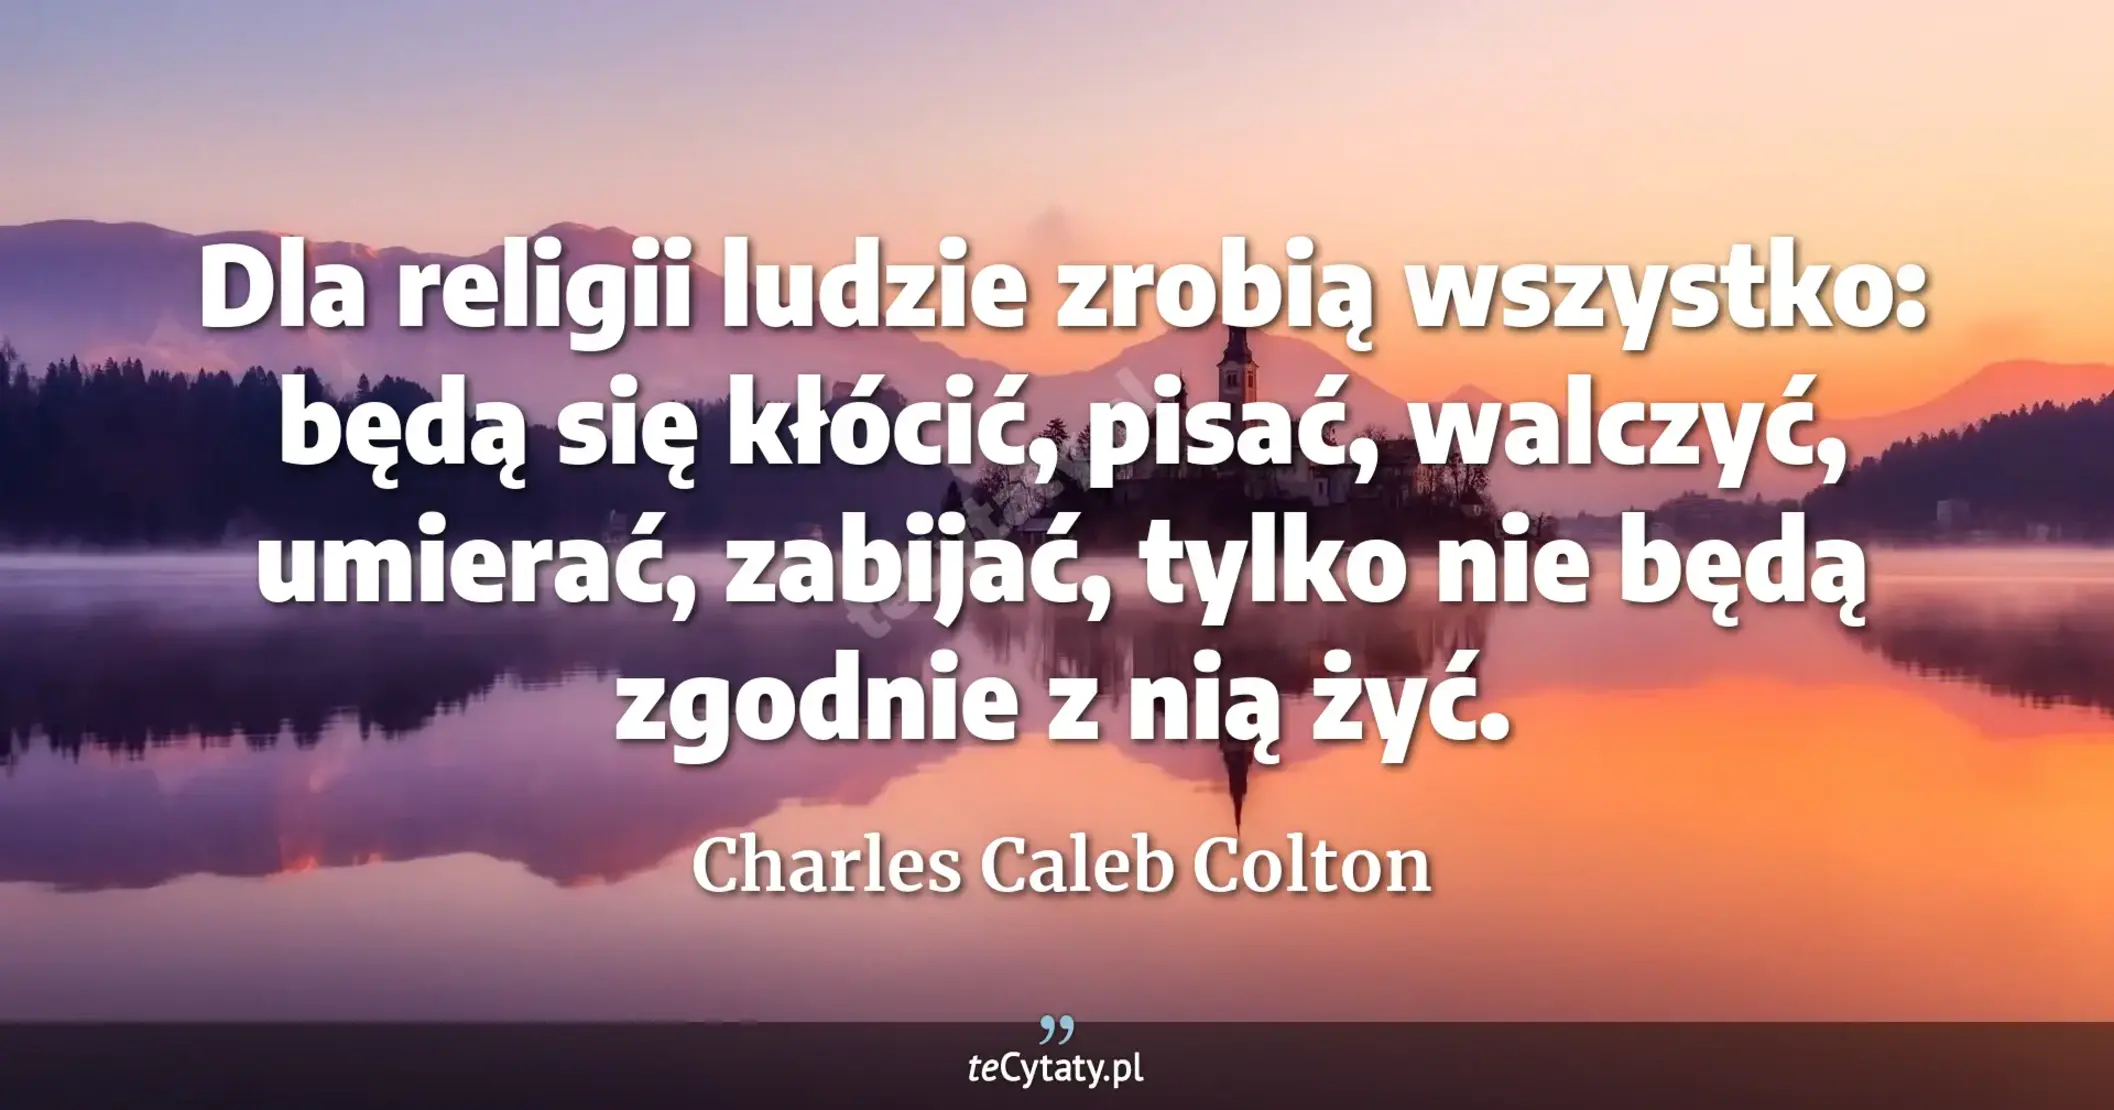 Dla religii ludzie zrobią wszystko: będą się kłócić, pisać, walczyć, umierać, zabijać, tylko nie będą zgodnie z nią żyć. - Charles Caleb Colton